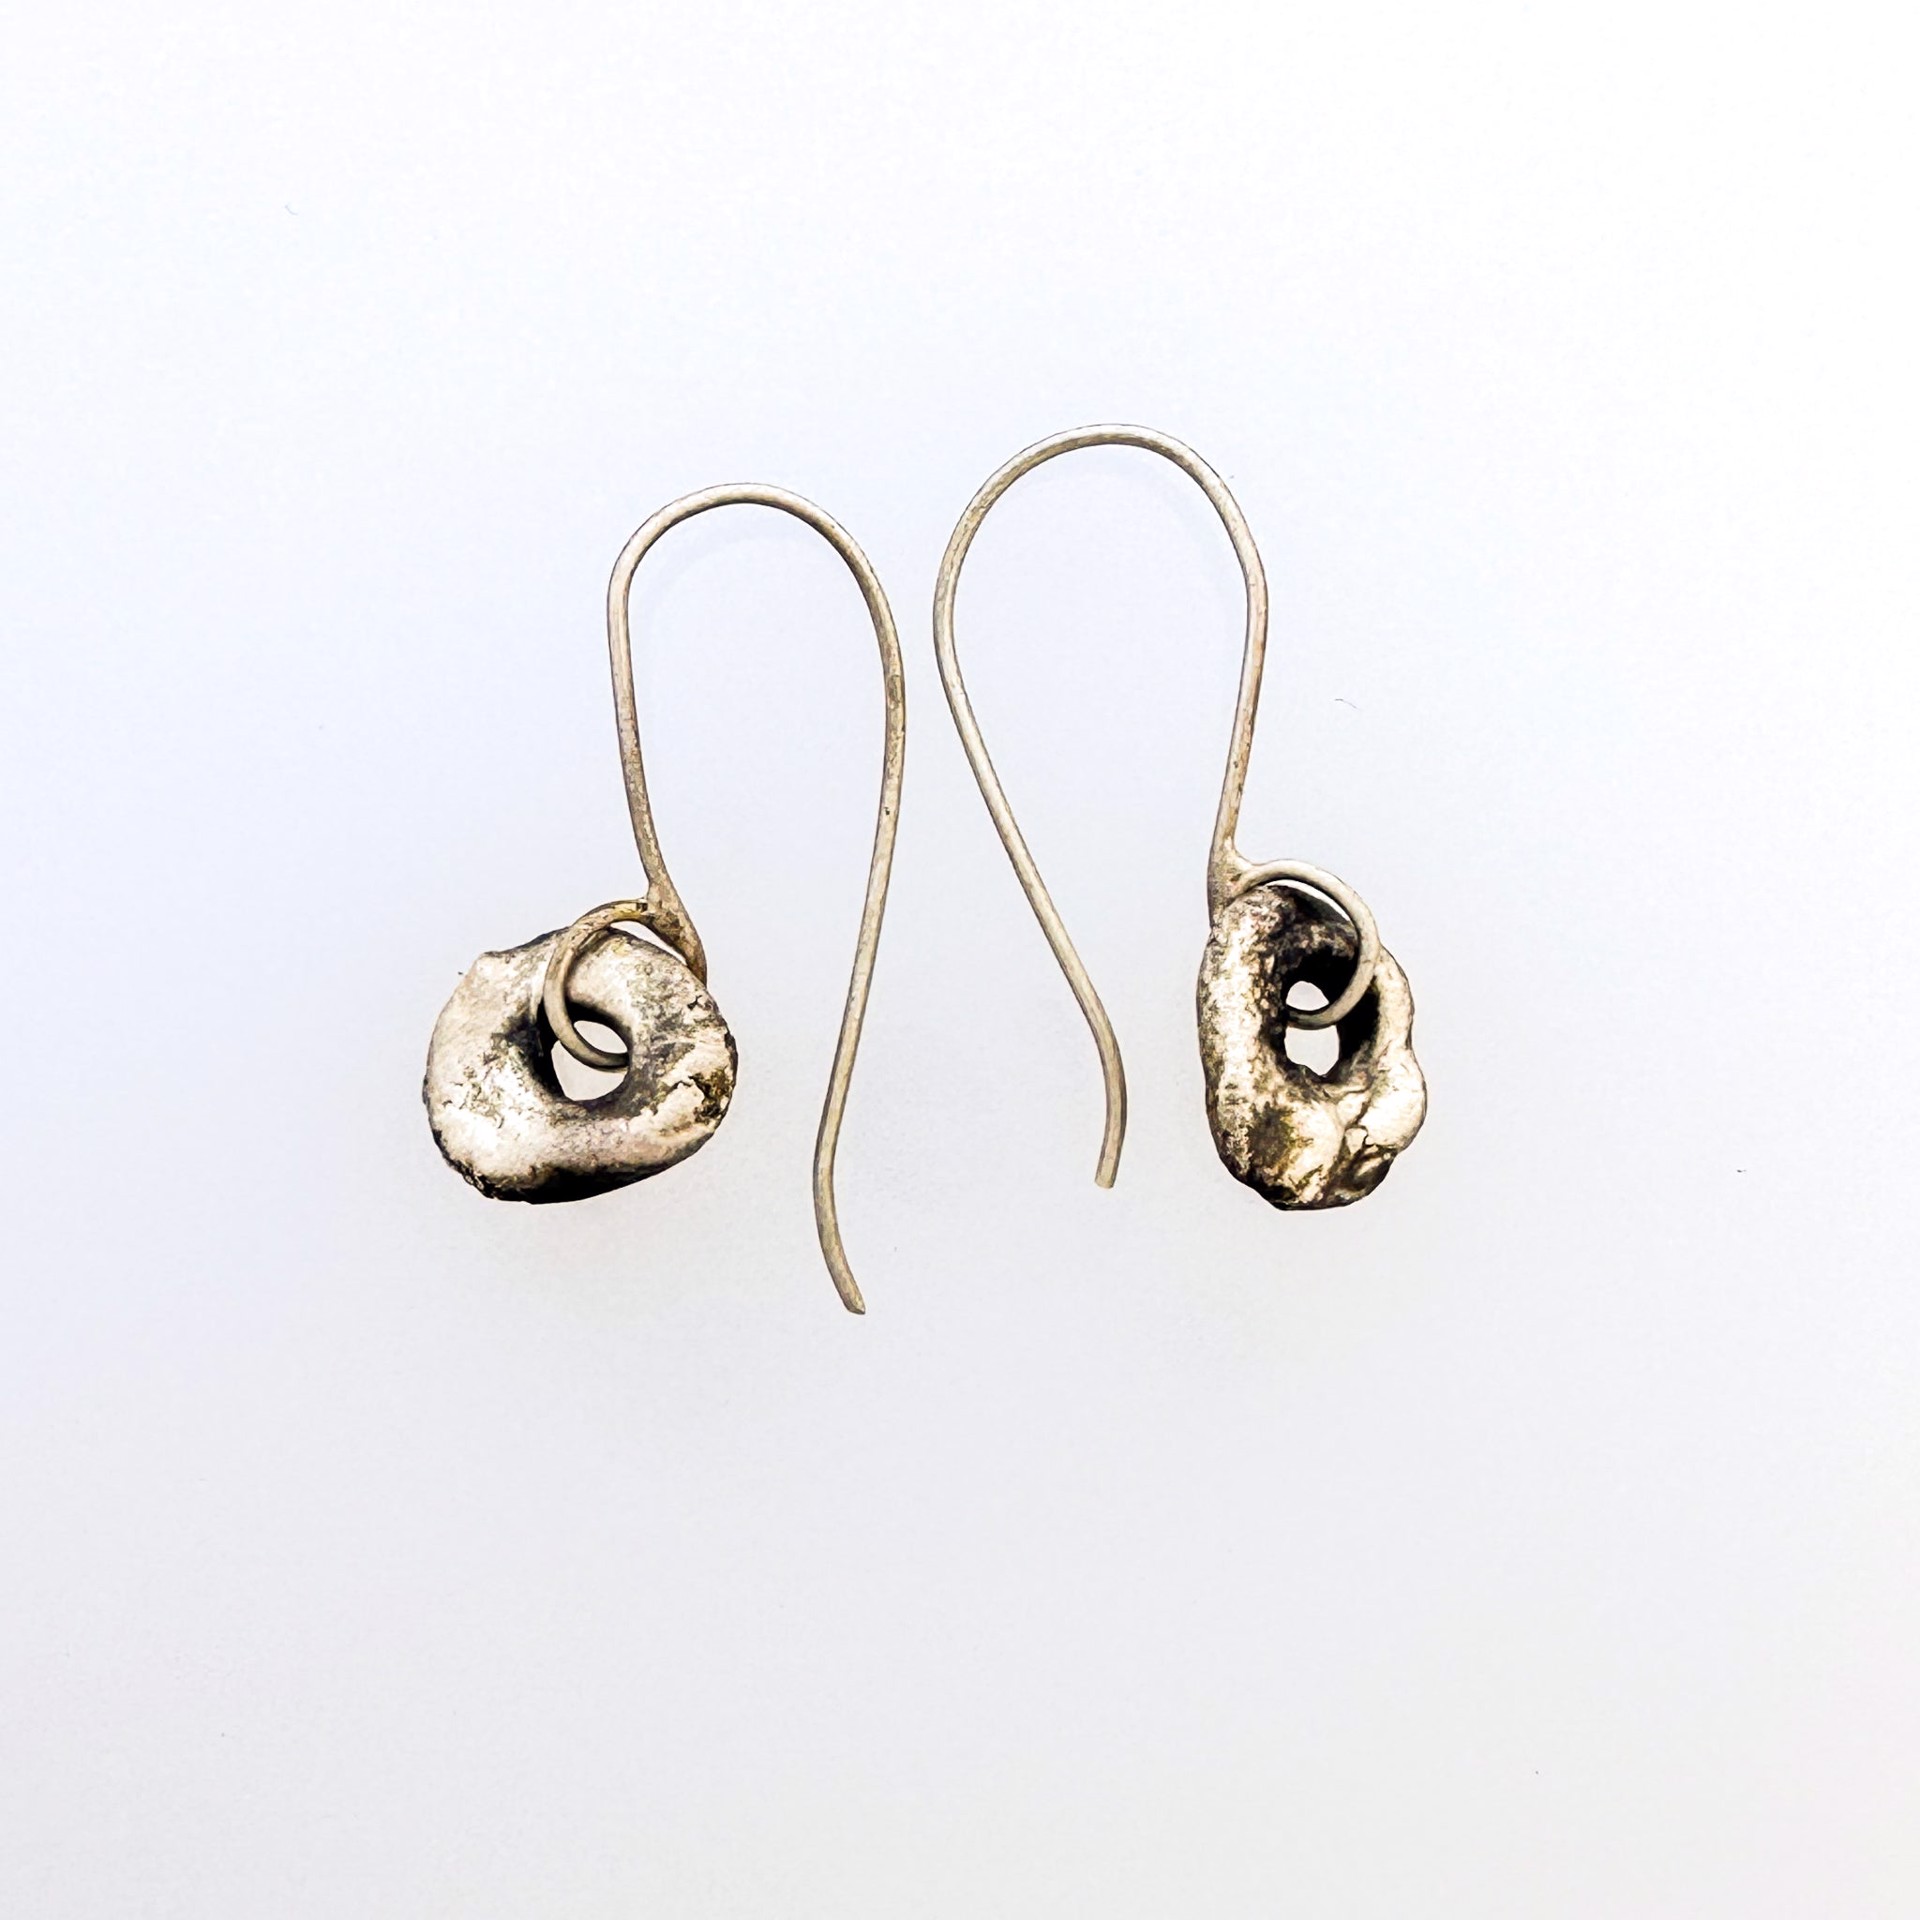 Molten earrings on hooks by Lori Metals